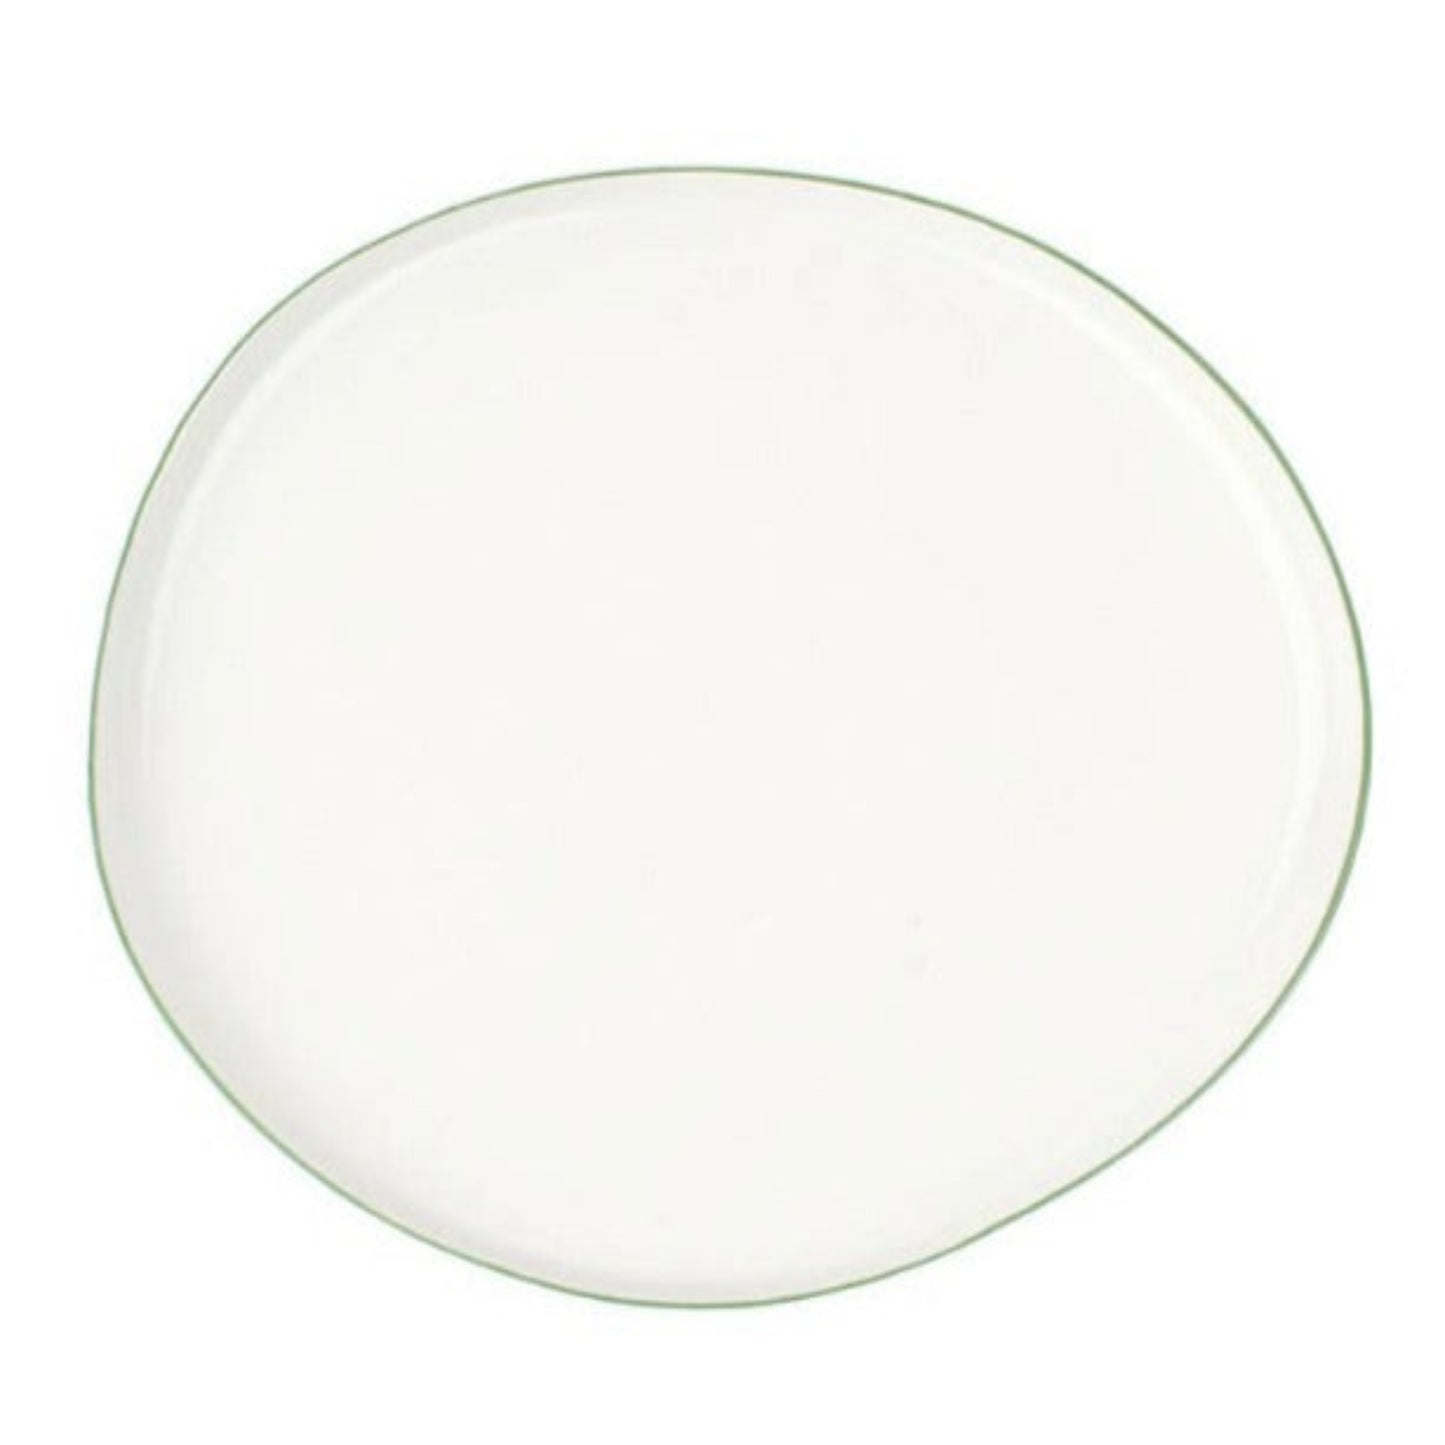 Large Platter, White & Green